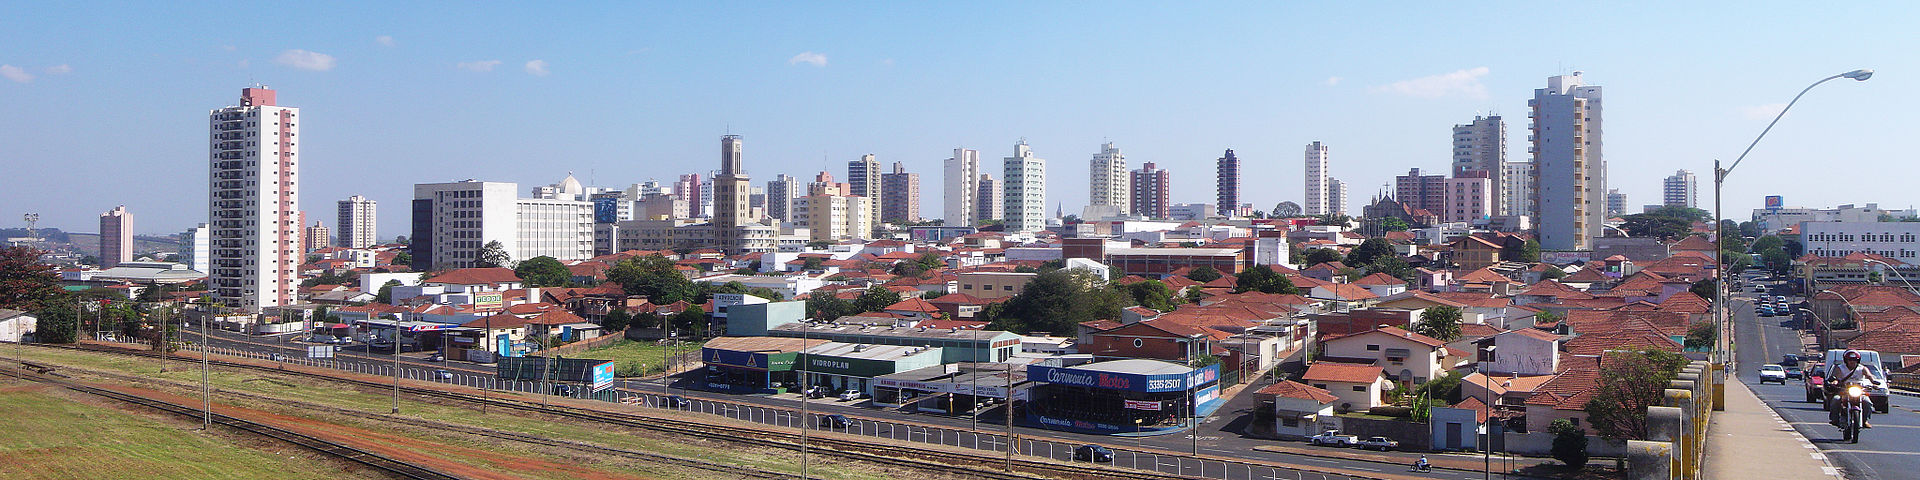 Araraquara_Panoramica